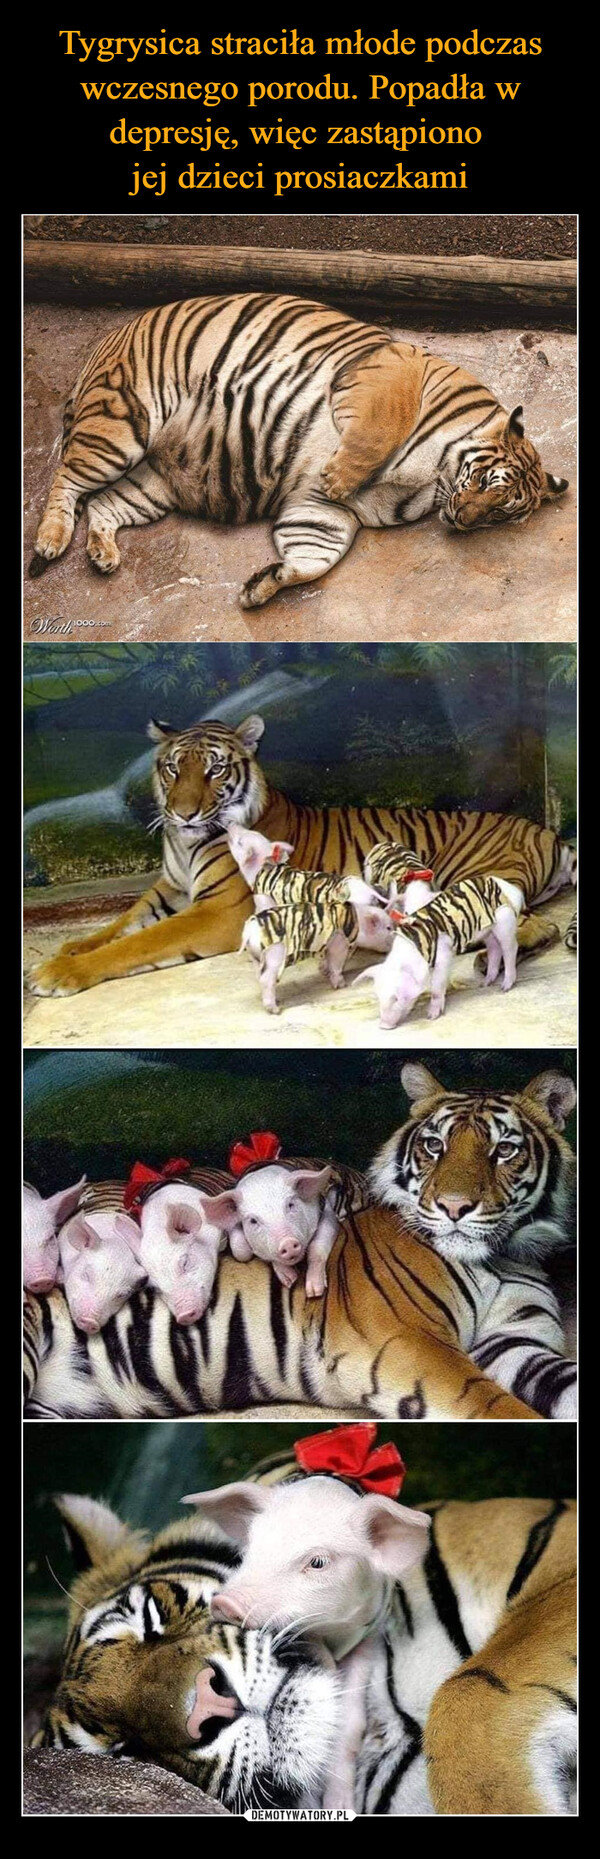 Tygrysica straciła młode podczas wczesnego porodu. Popadła w depresję, więc zastąpiono 
jej dzieci prosiaczkami